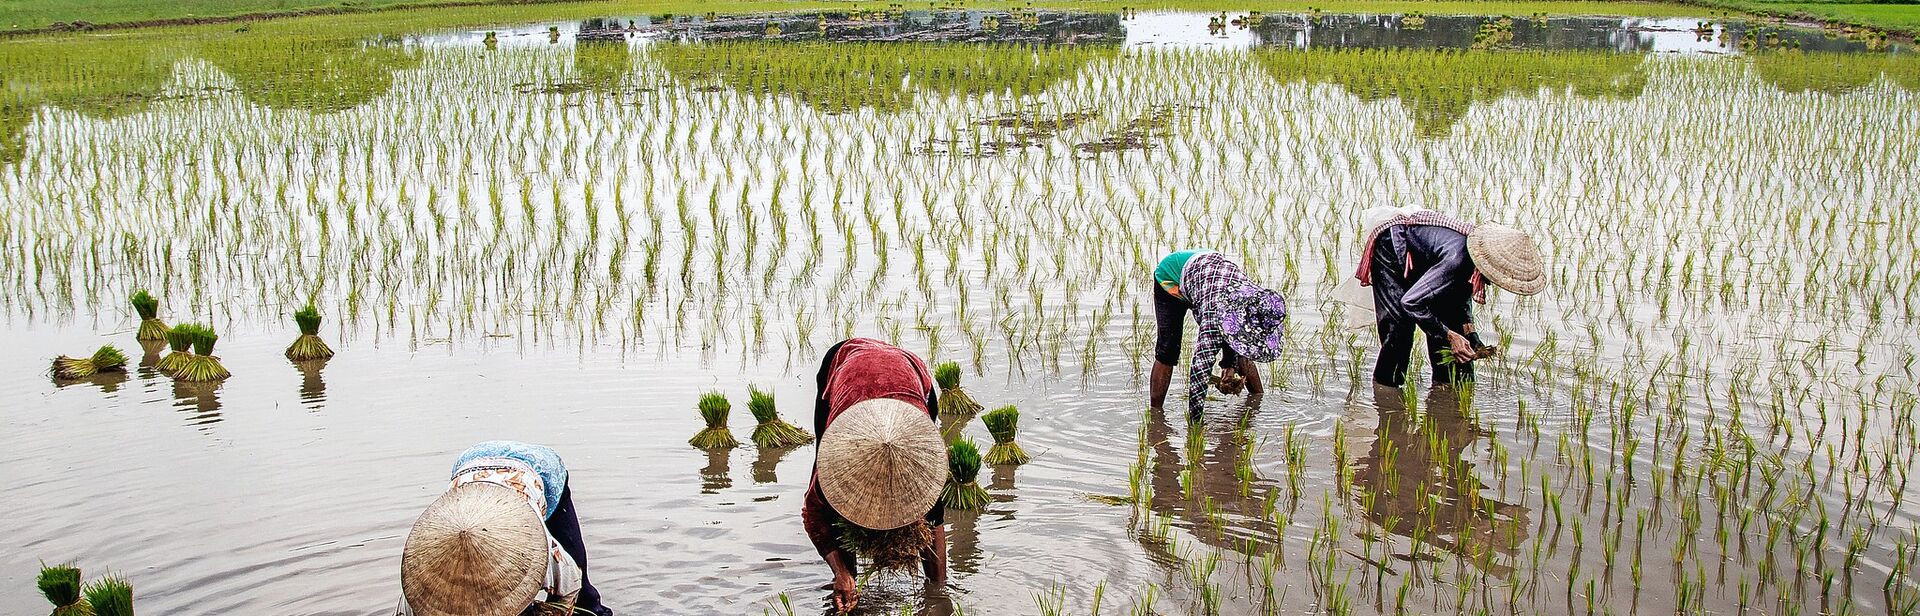 women transplanting rice in a paddy field in Vietnam